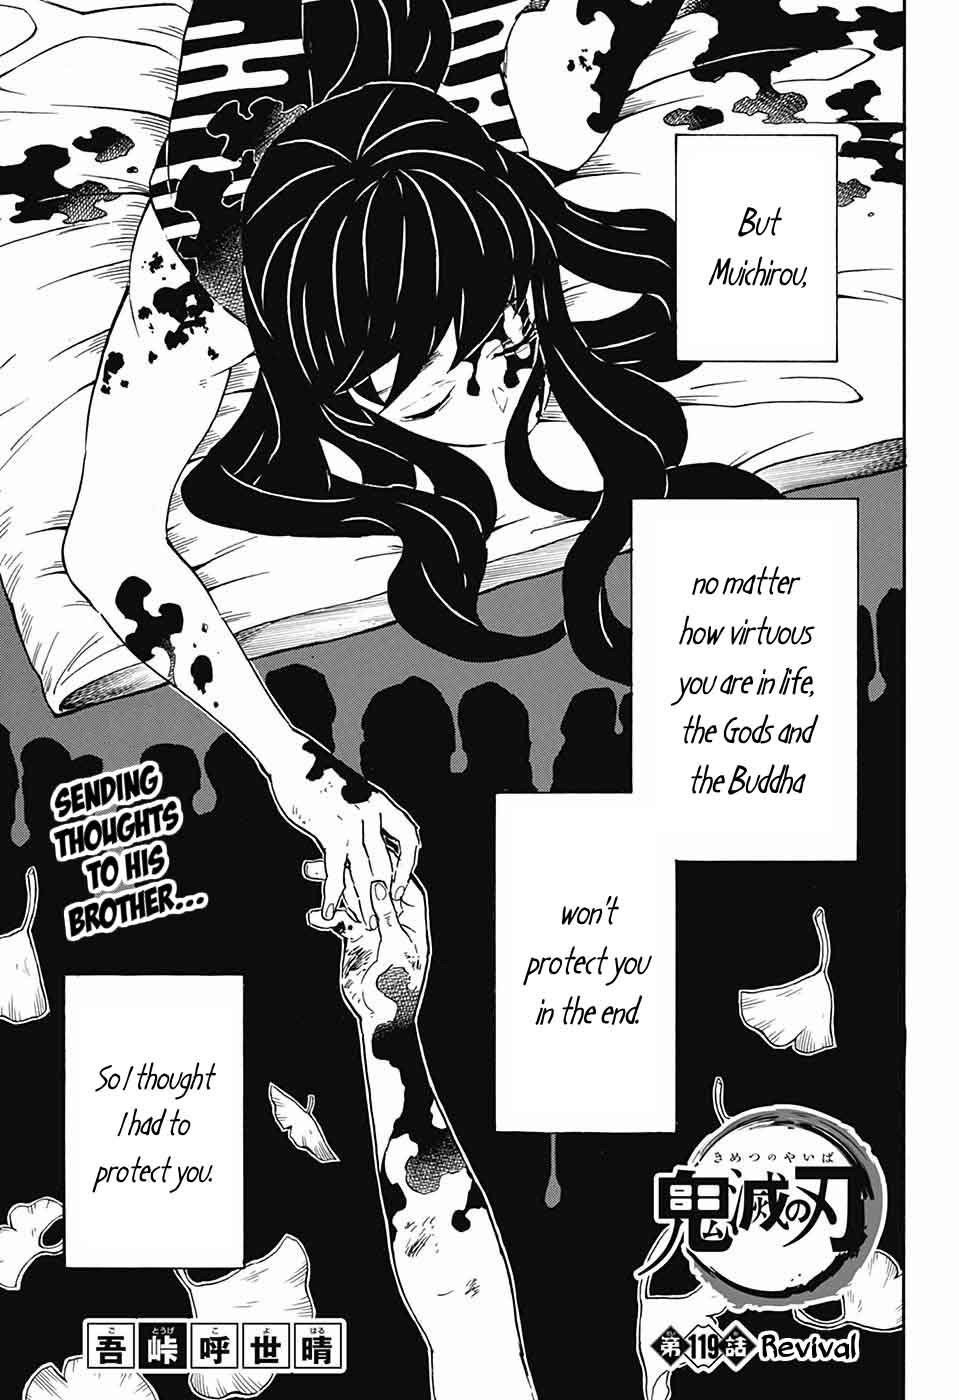 Demon Slayer Kimetsu No Yaiba Chapter 118 Demon Slayer Kimetsu No Yaiba Manga